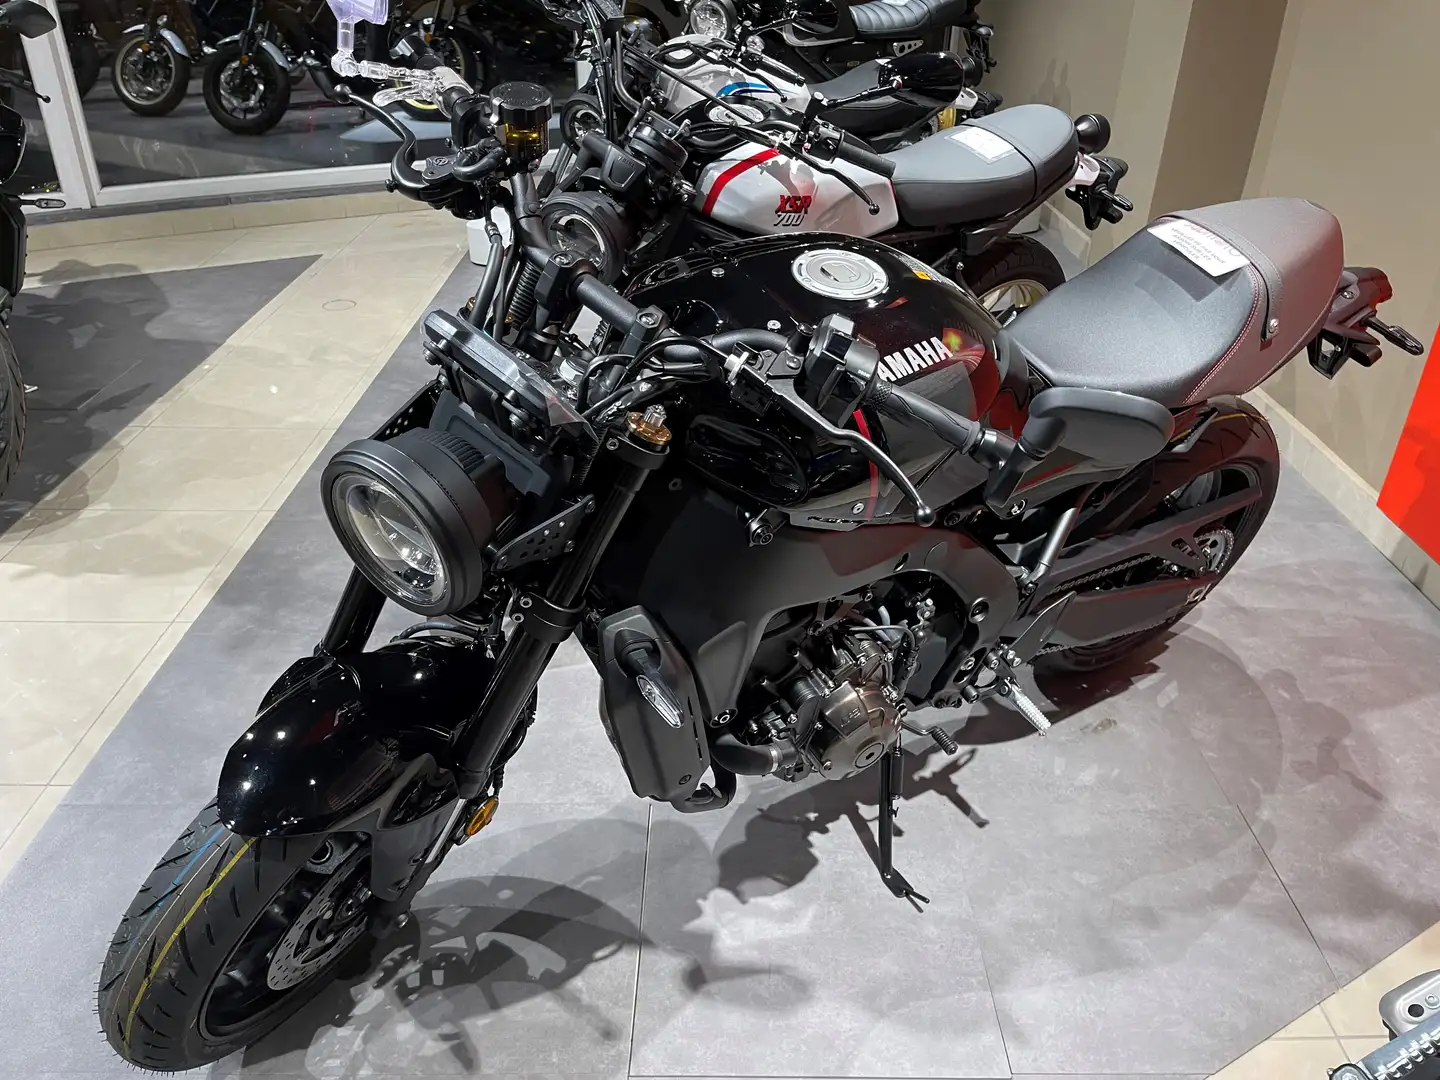 Yamaha XSR 900 Neuve - Disponible dans tous les coloris Černá - 2